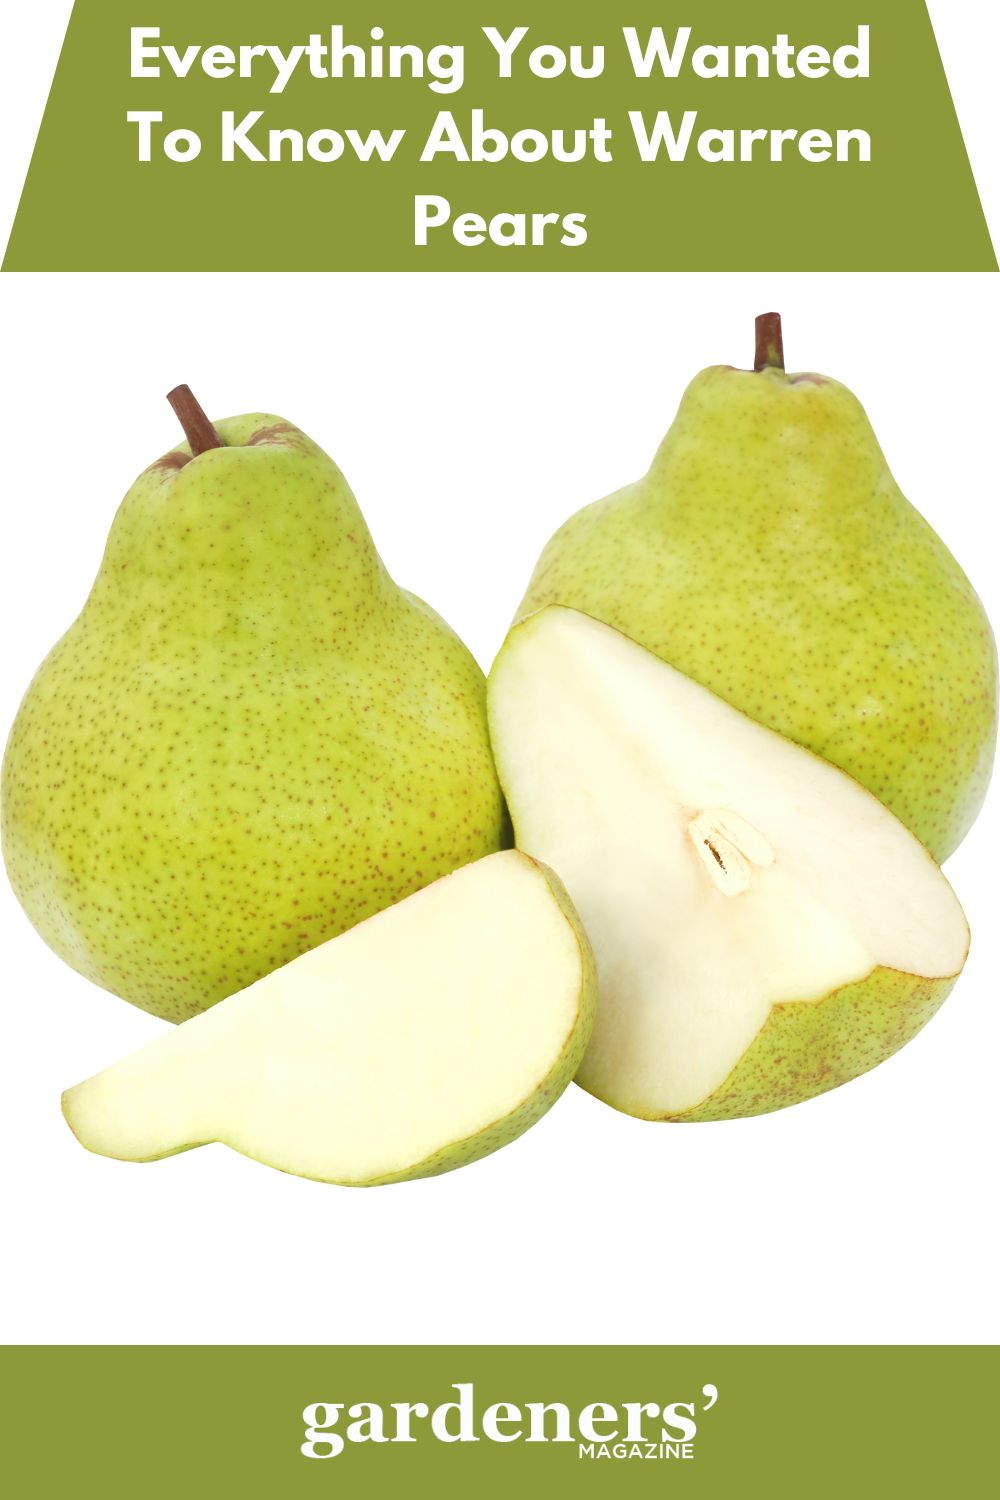 Груши Пакхам Вильямс. Fresh Pear груша. Груши Пакхам Вильямс, 1 кг. Груша Пакхам Триумф. Fresh pear